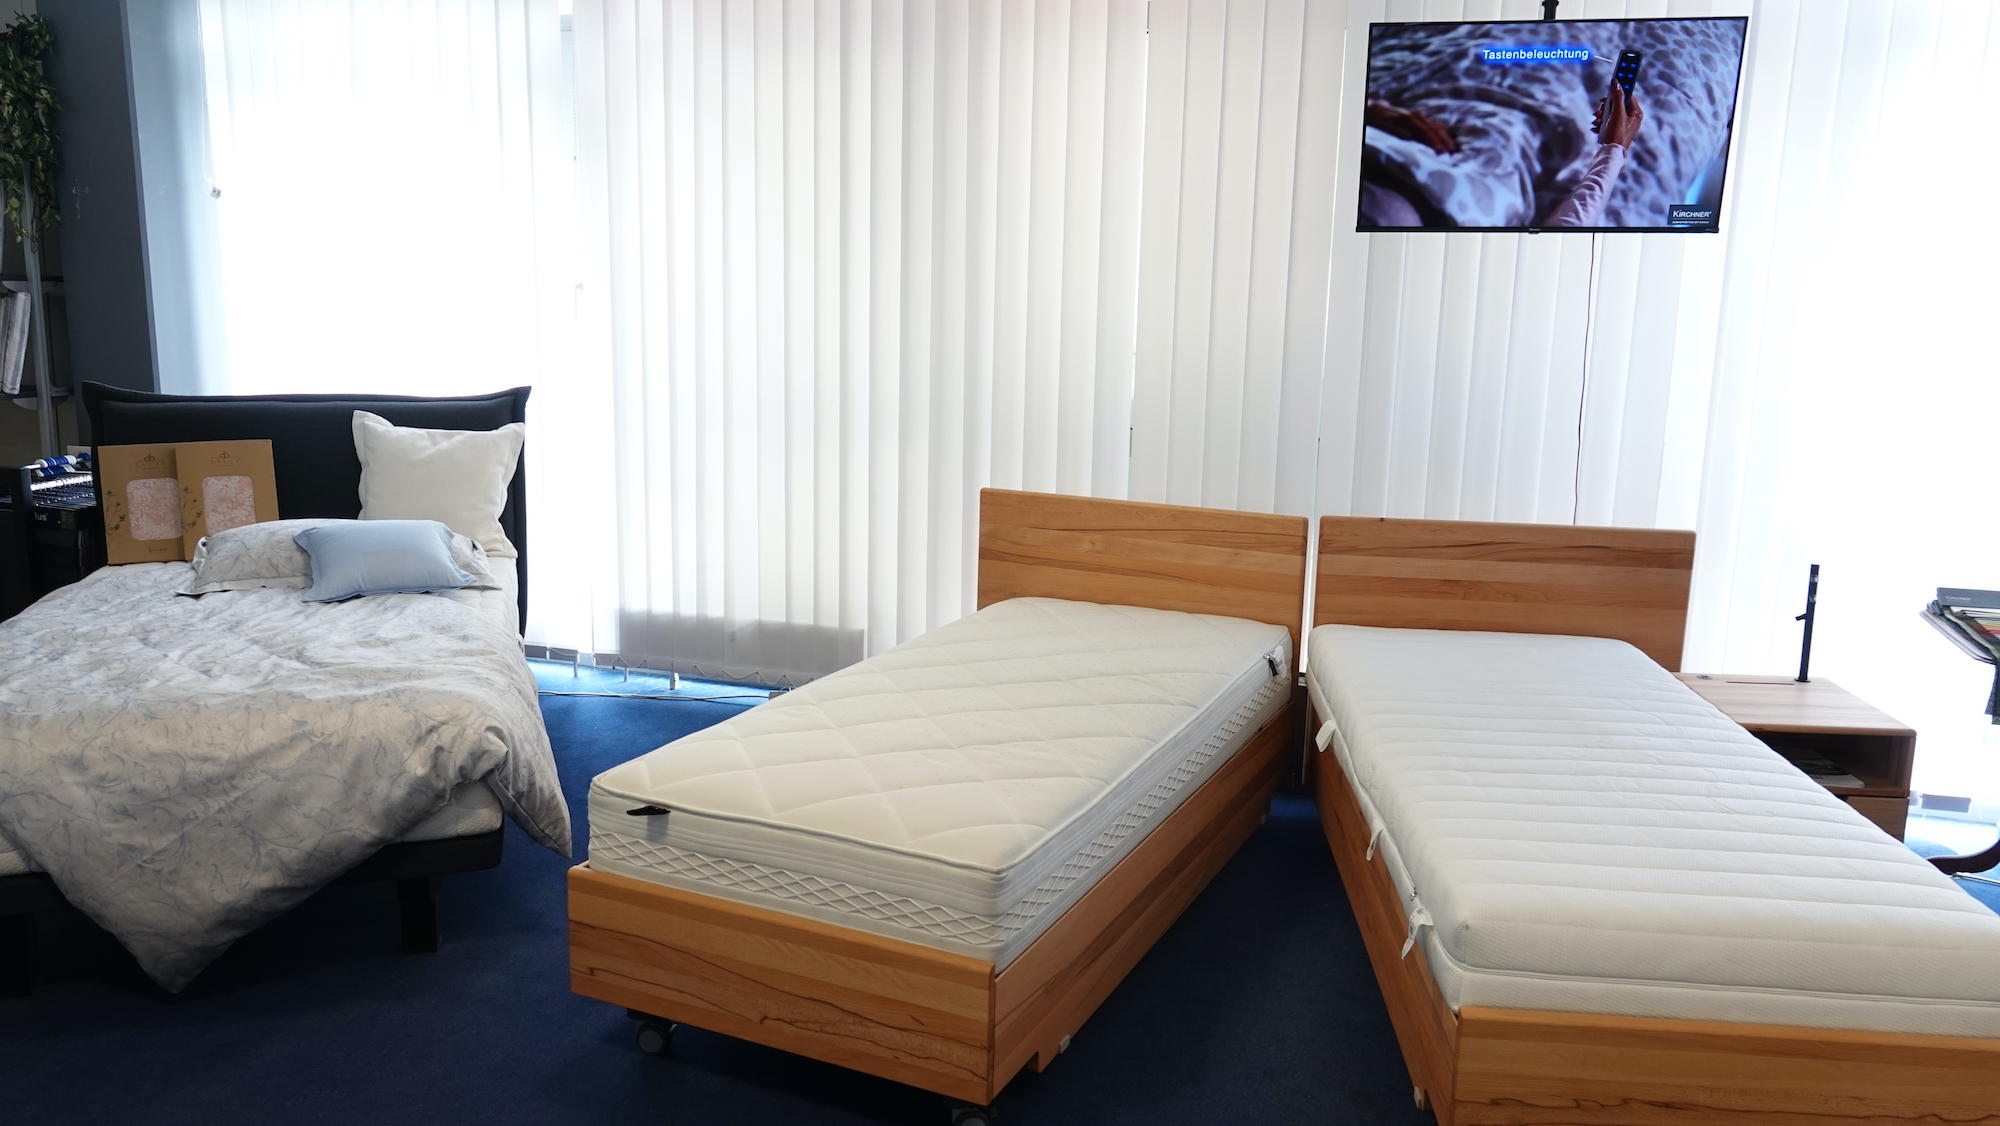 Kundenbild groß 4 Göpfert - gesund schlafen I Matratzen & Betten